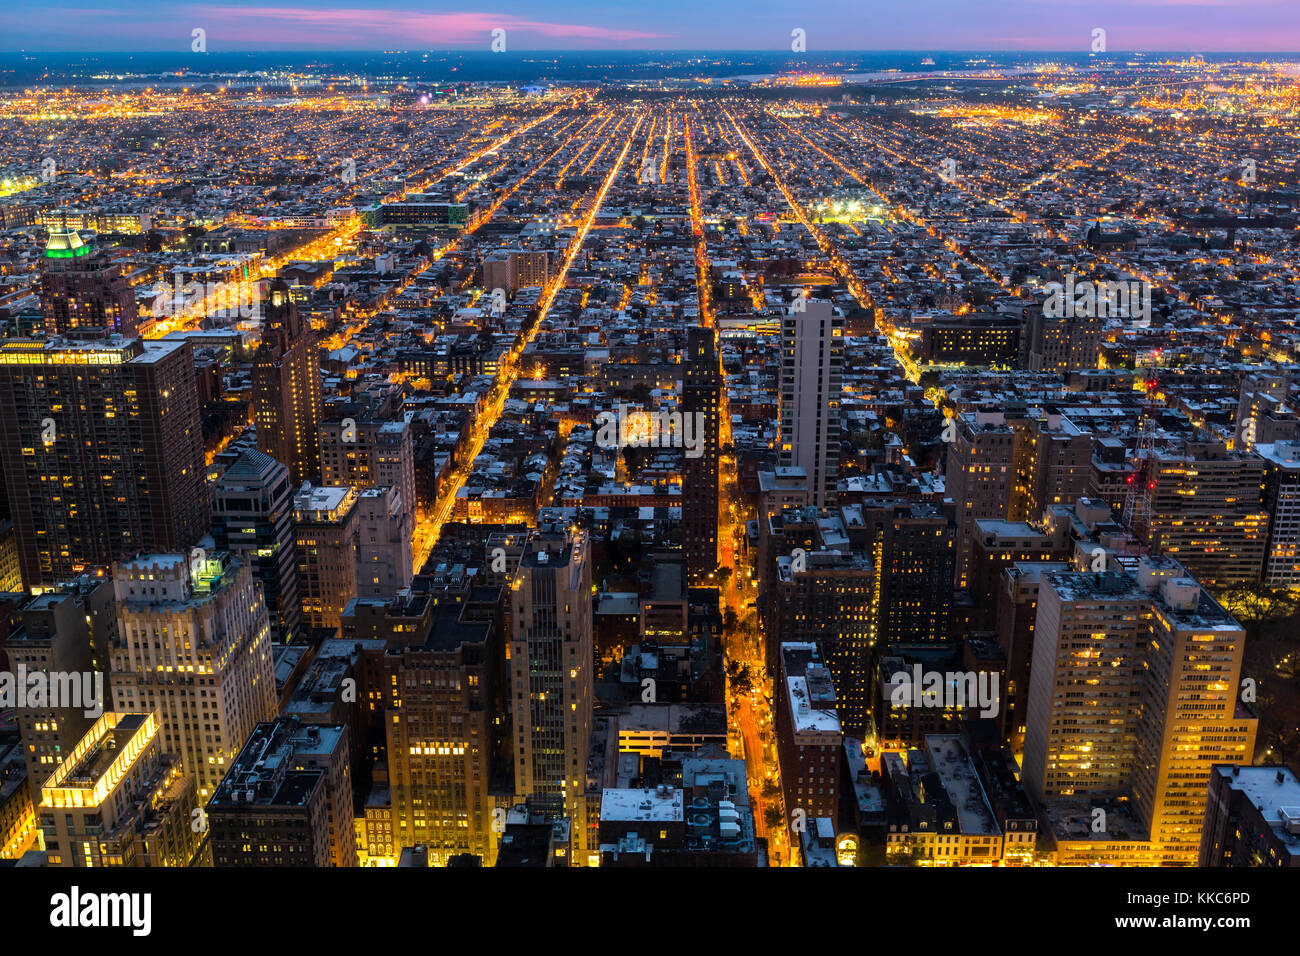 Vista aerea di Philadelphia con strade di città convergenti verso il bordo dell'area metropolitana Foto Stock